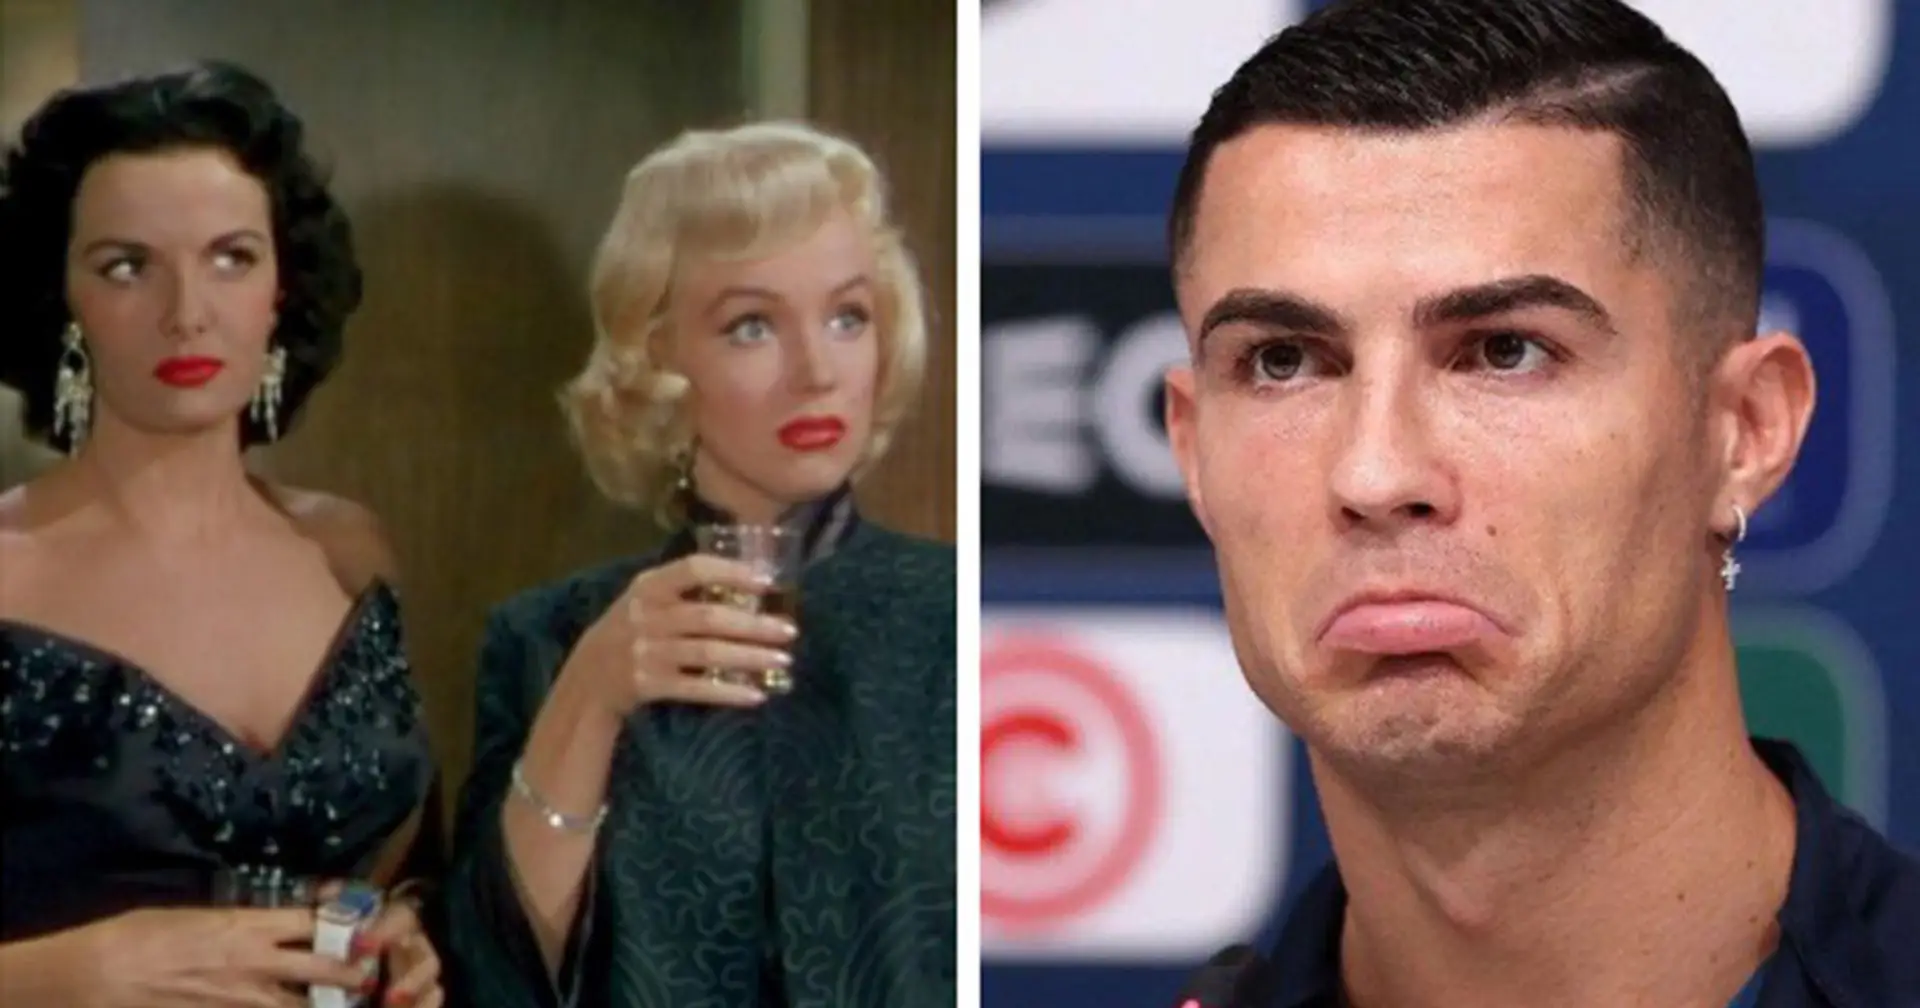 "Manche bevorzugen blonde und manche brünette Frauen": Cristiano Ronaldo antwortet auf Kritik